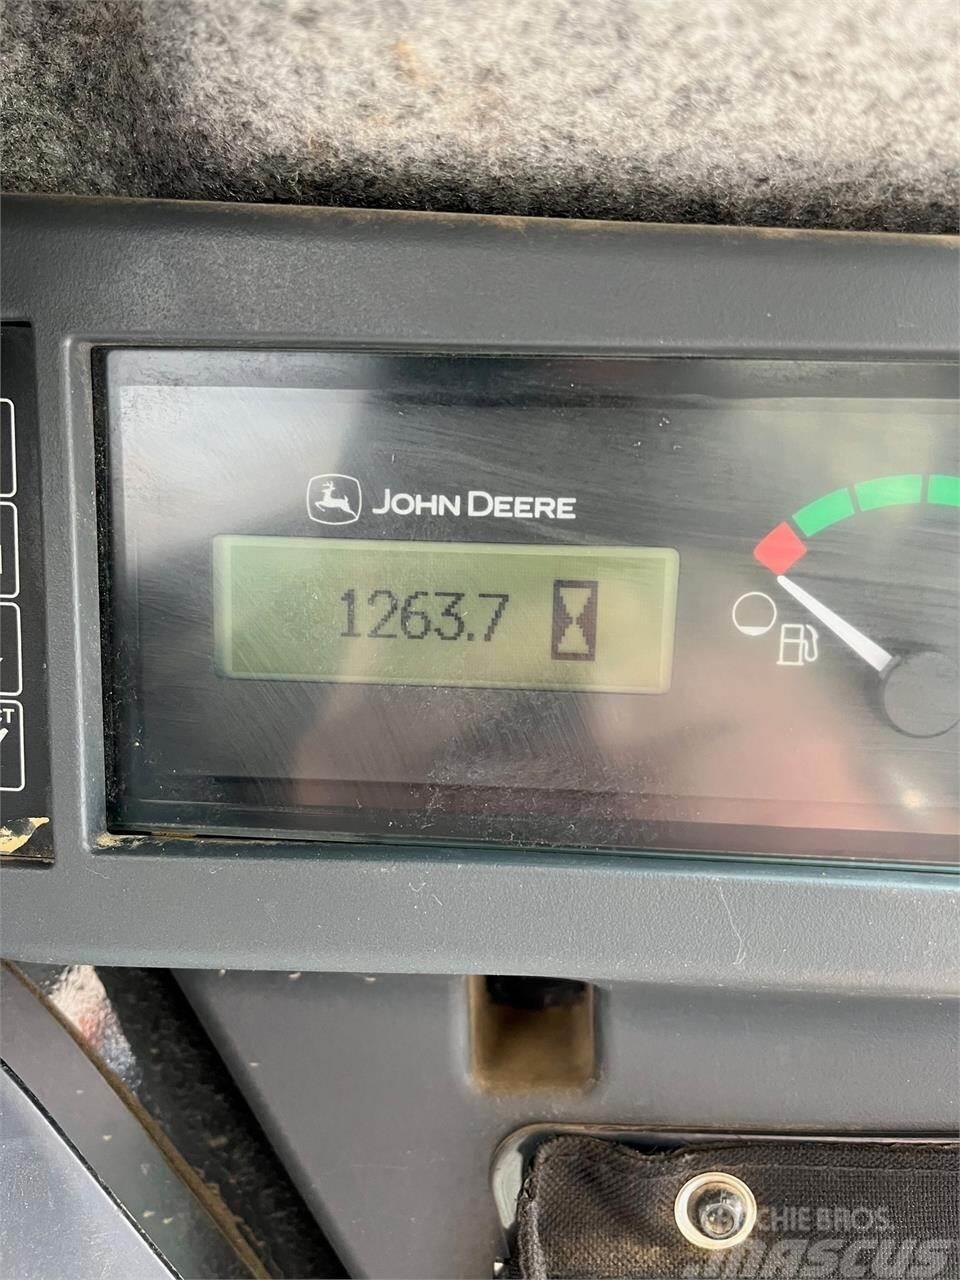 John Deere 333G Minicargadoras